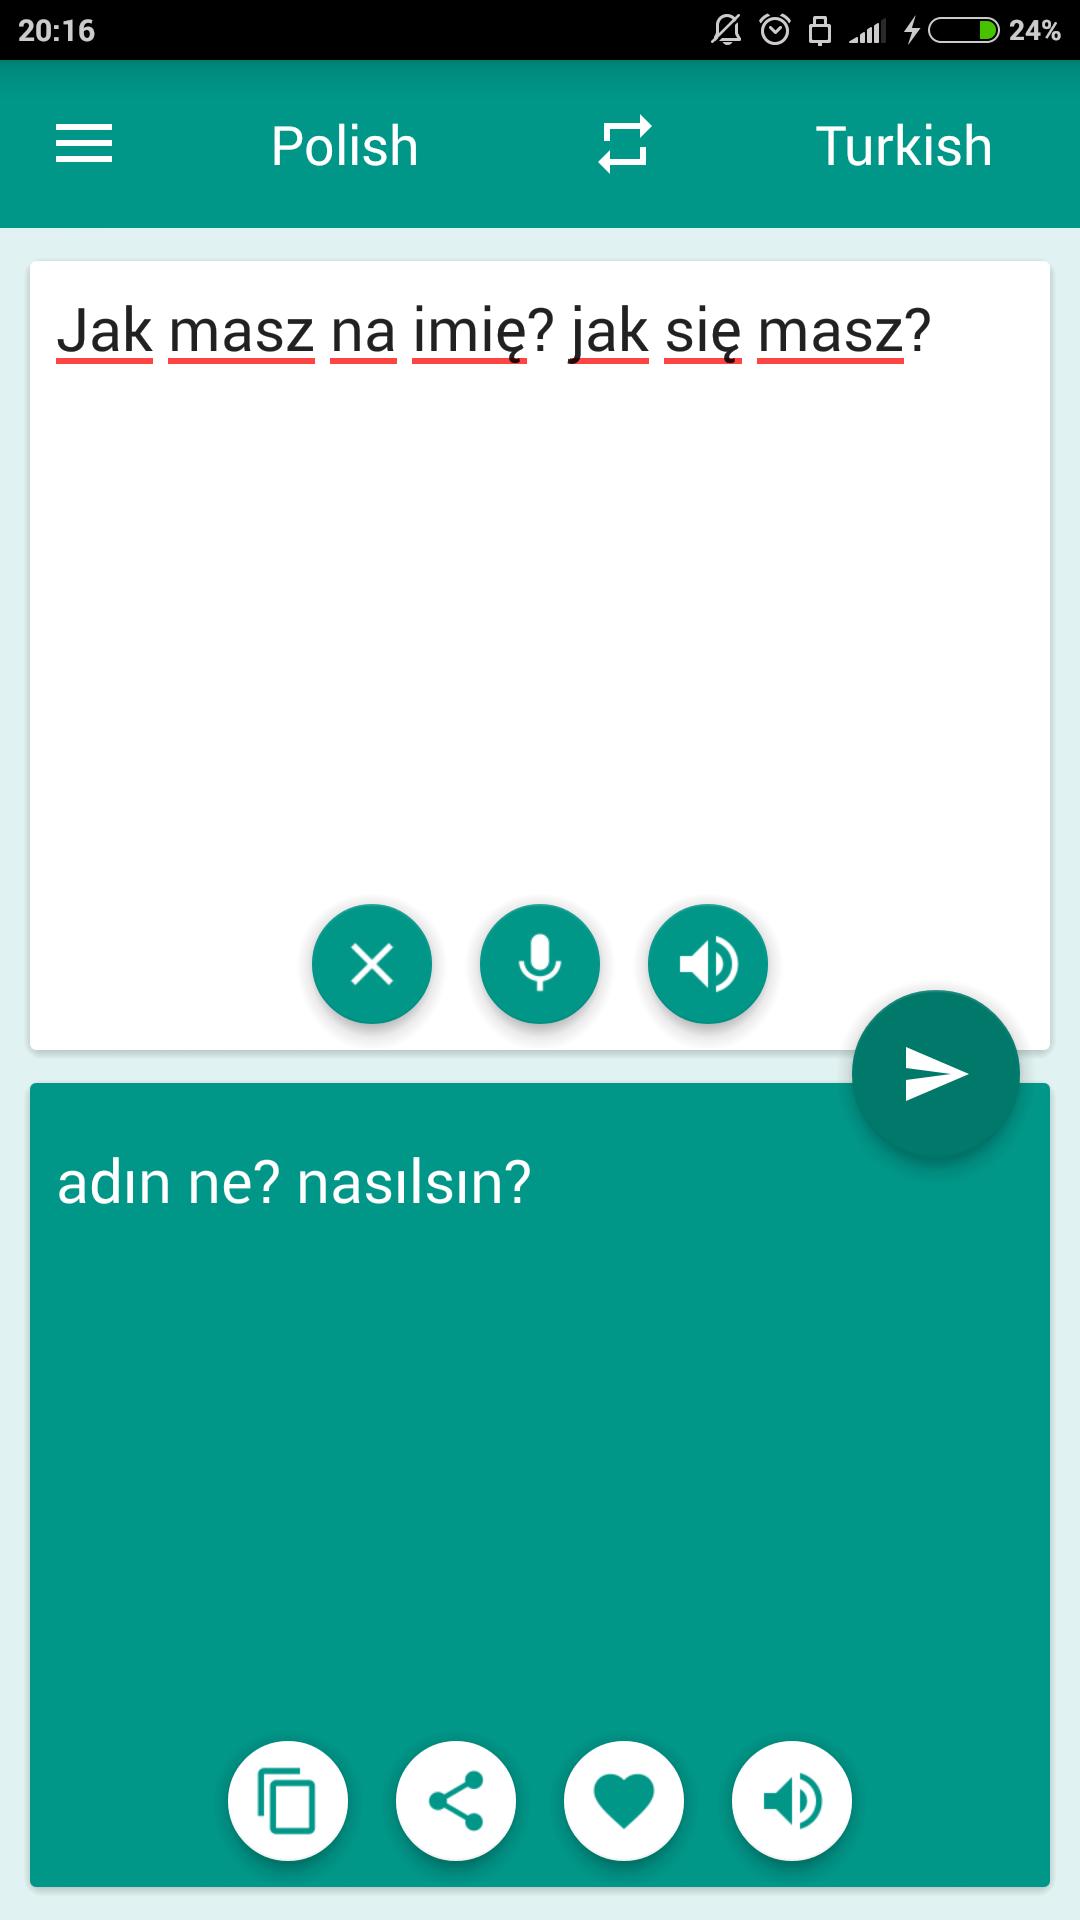 Tłumacz polsko-turecki for Android - APK Download